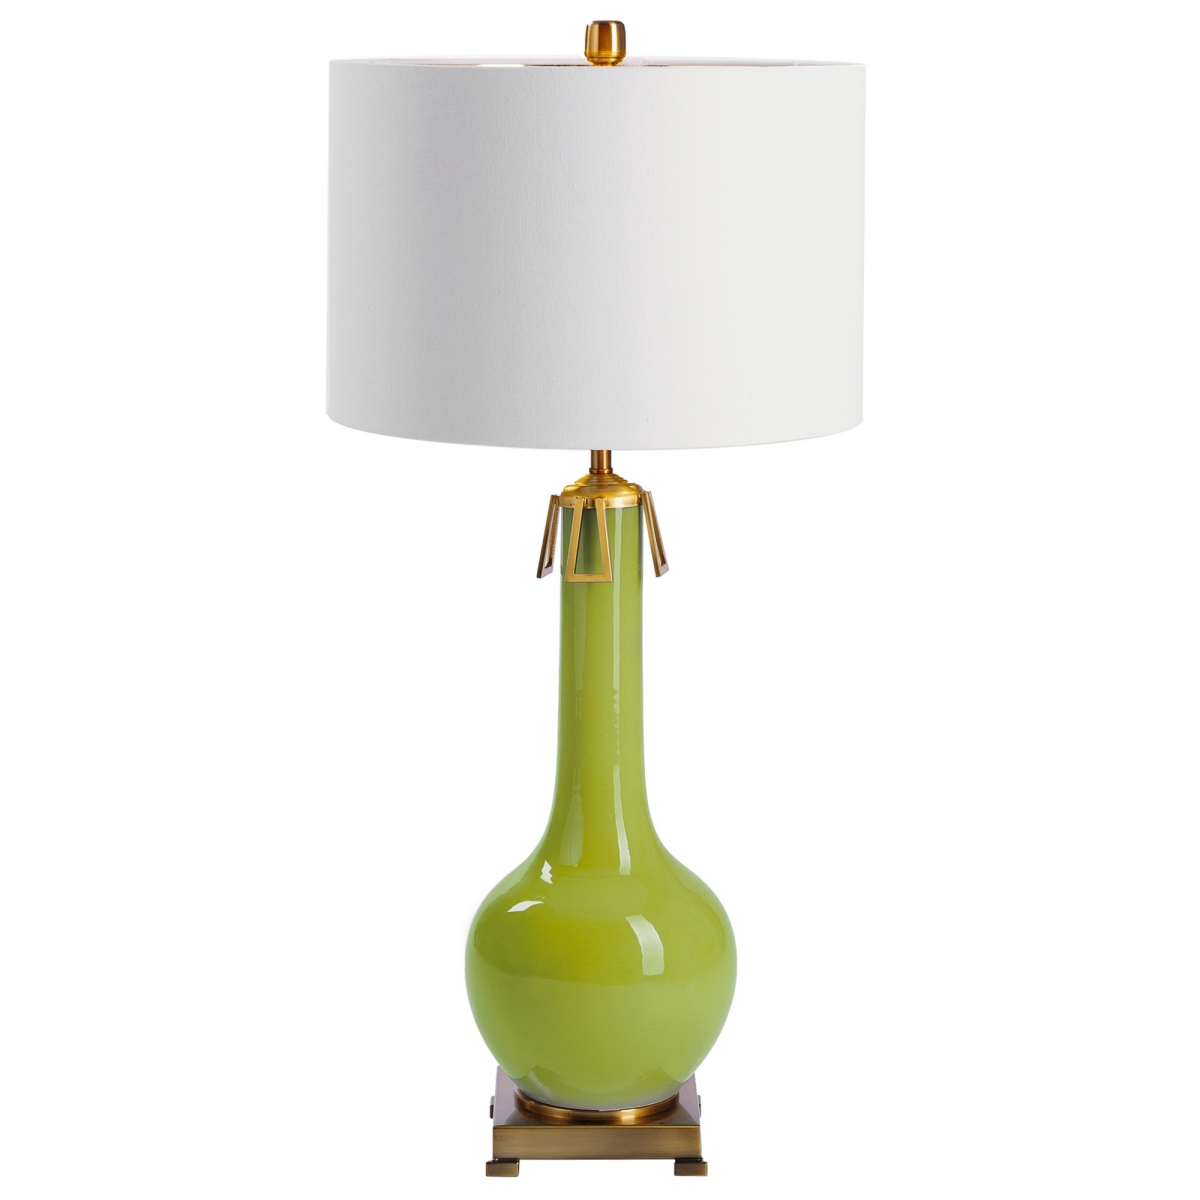 Настольная лампа Colorchoozer Table Lamp Olive 43.248